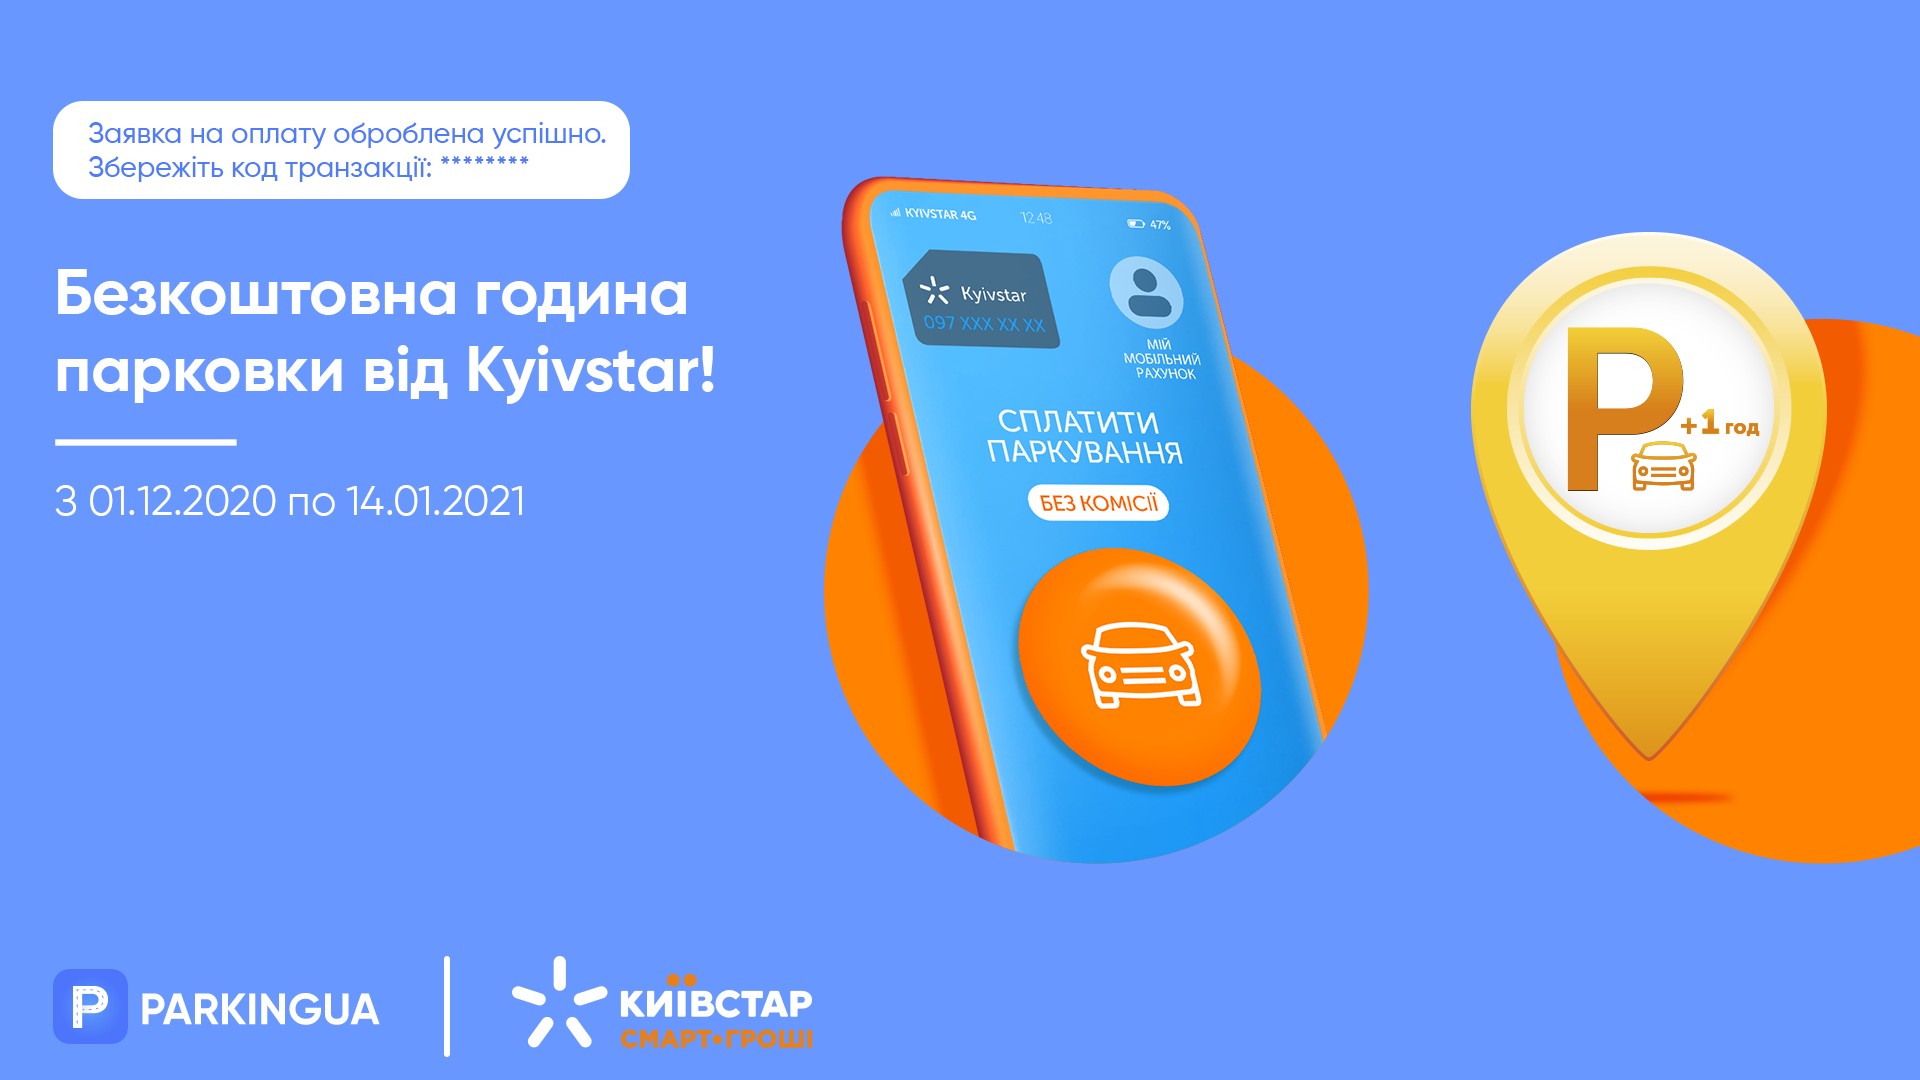 Сплачуйте за паркування у Parking UA мобільним балансом Kyivstar та отримуйте годину парковки у подарунок